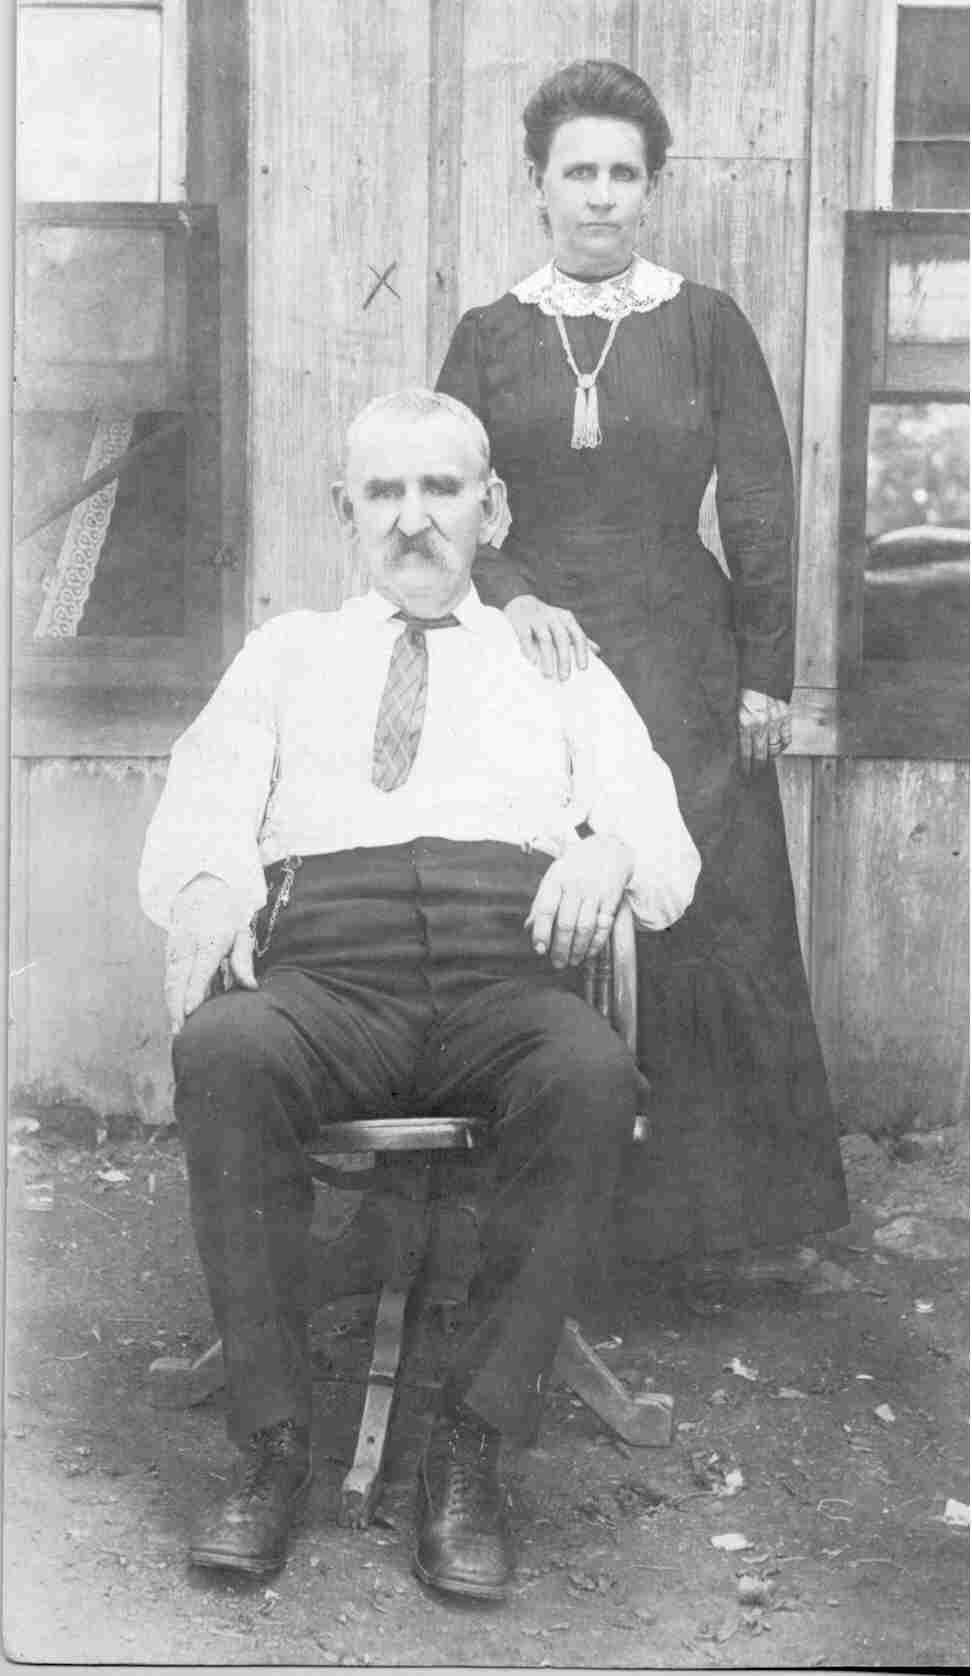 Thomas J. & Elizabeth Kauble